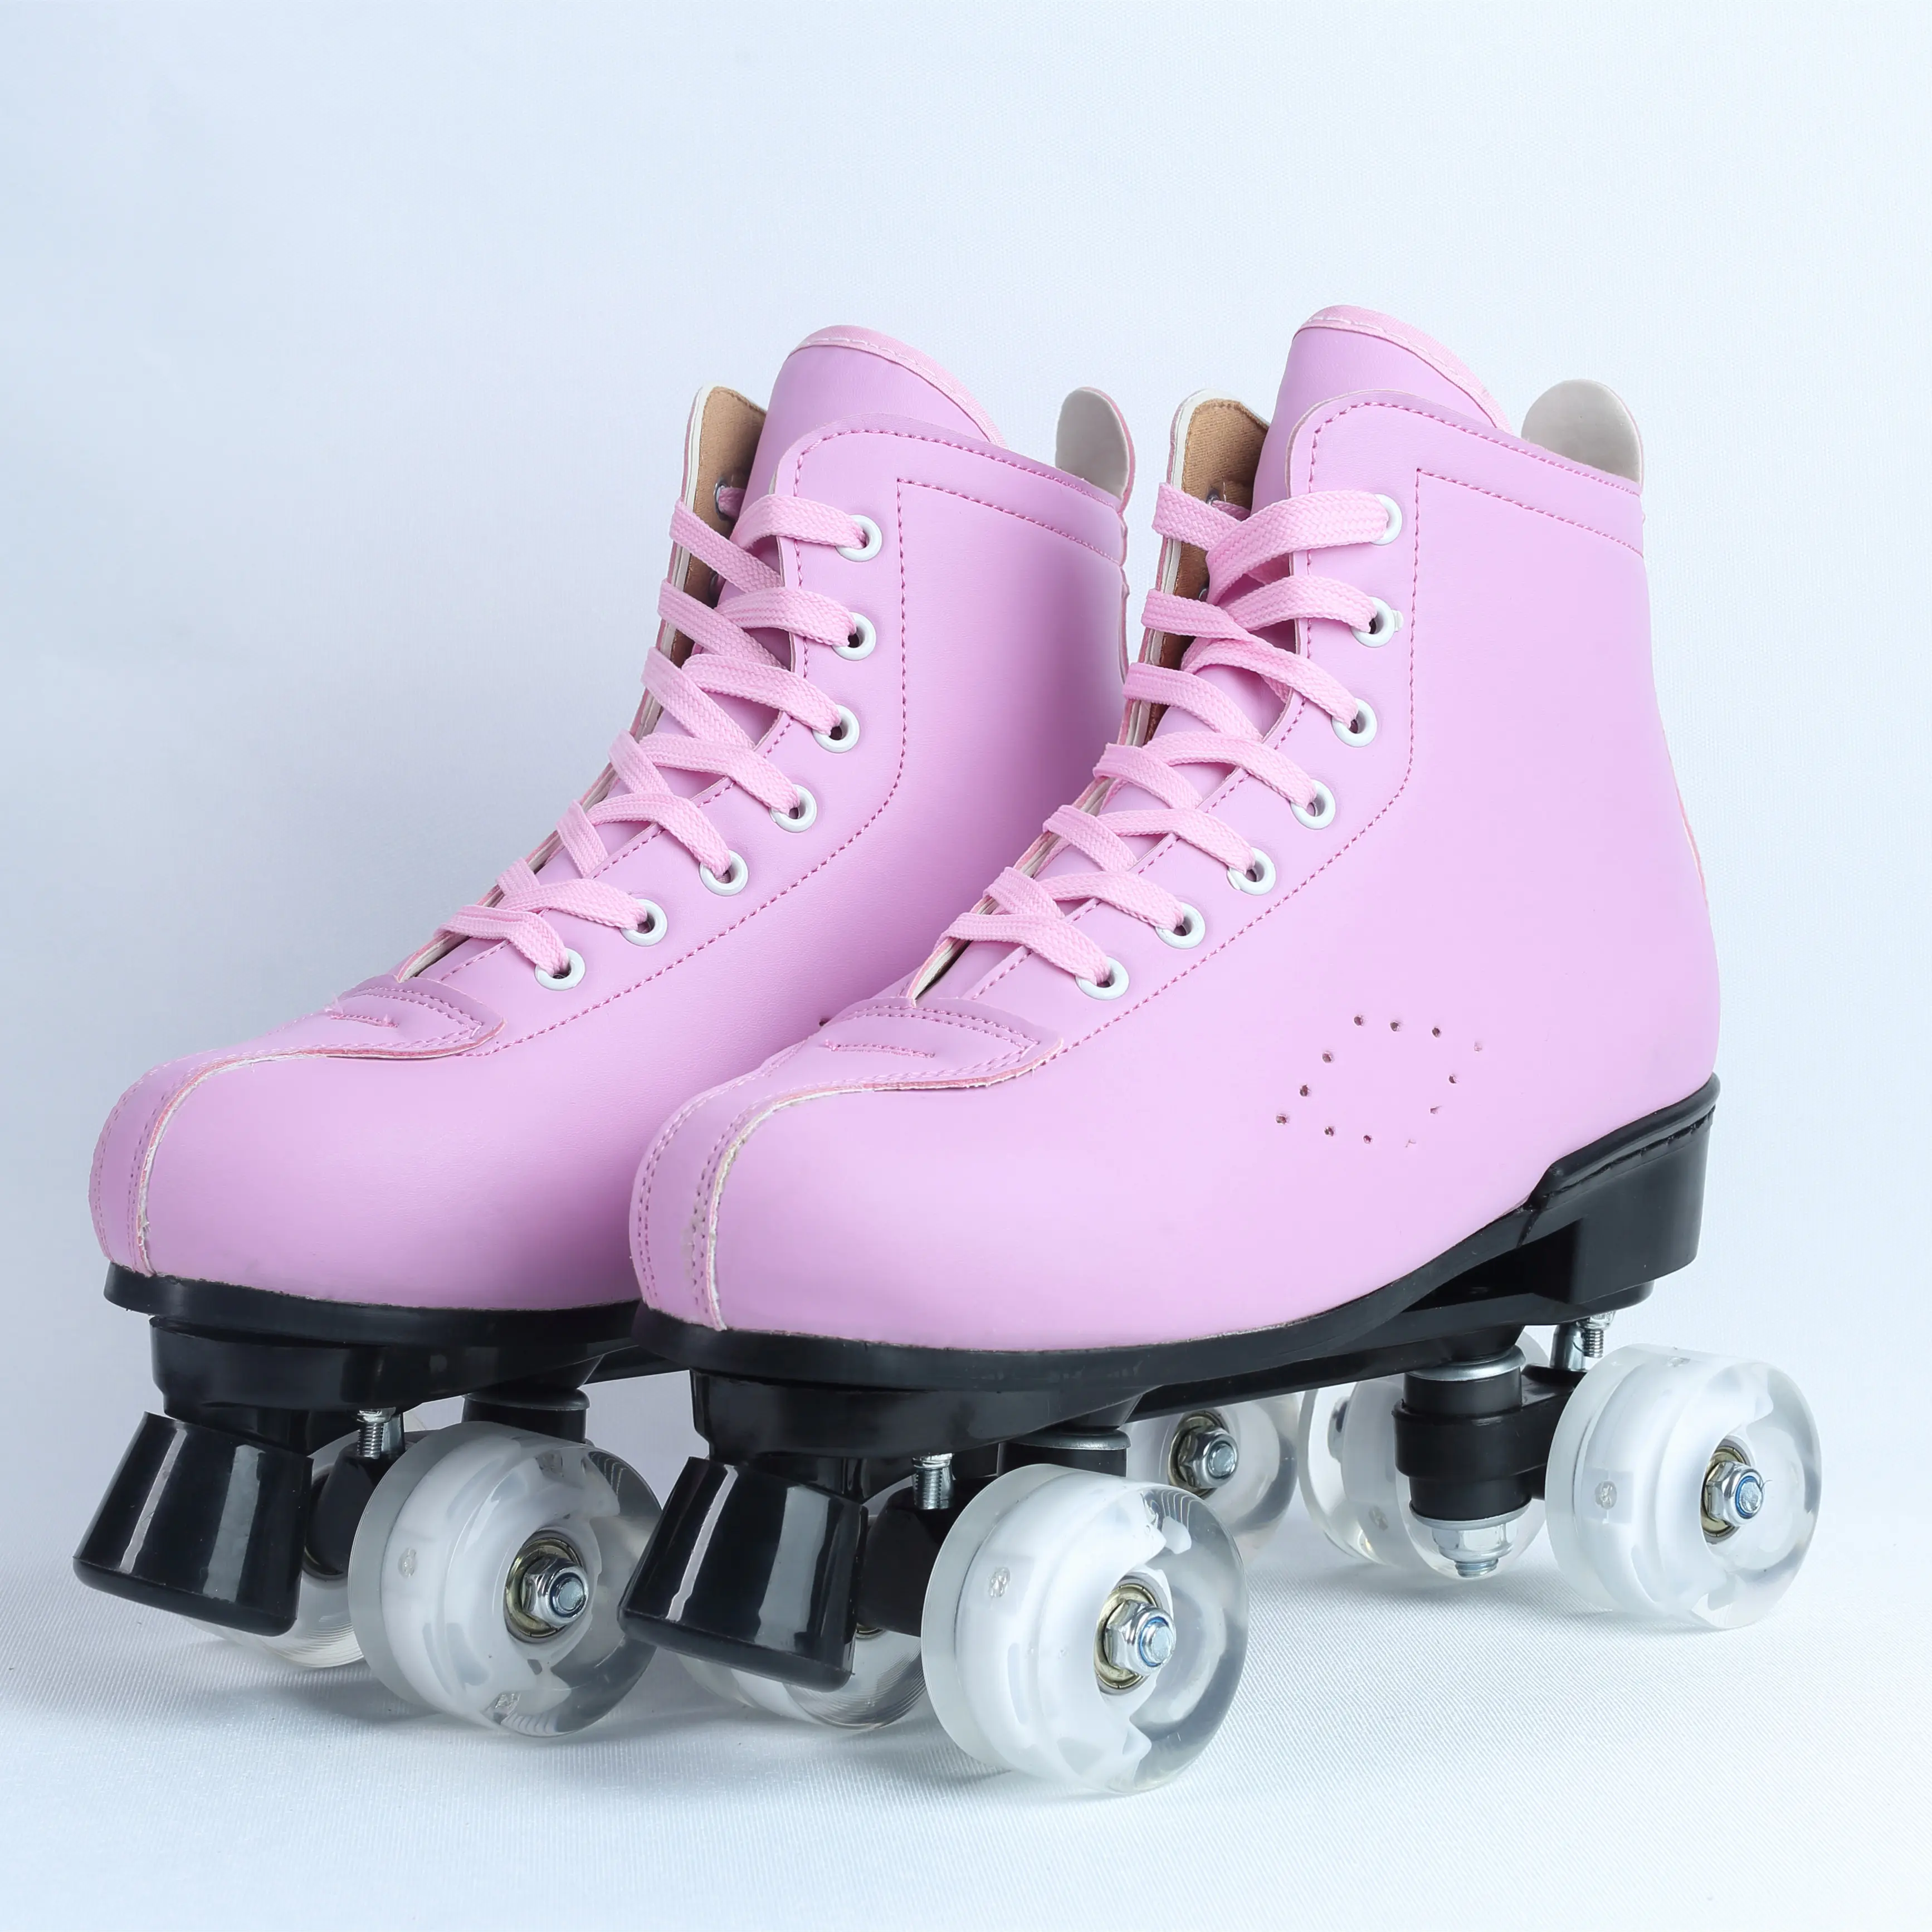 중국 상품 도매 스케이트 롤러 신발, 피겨 스케이팅 신발, 스케이트 신발